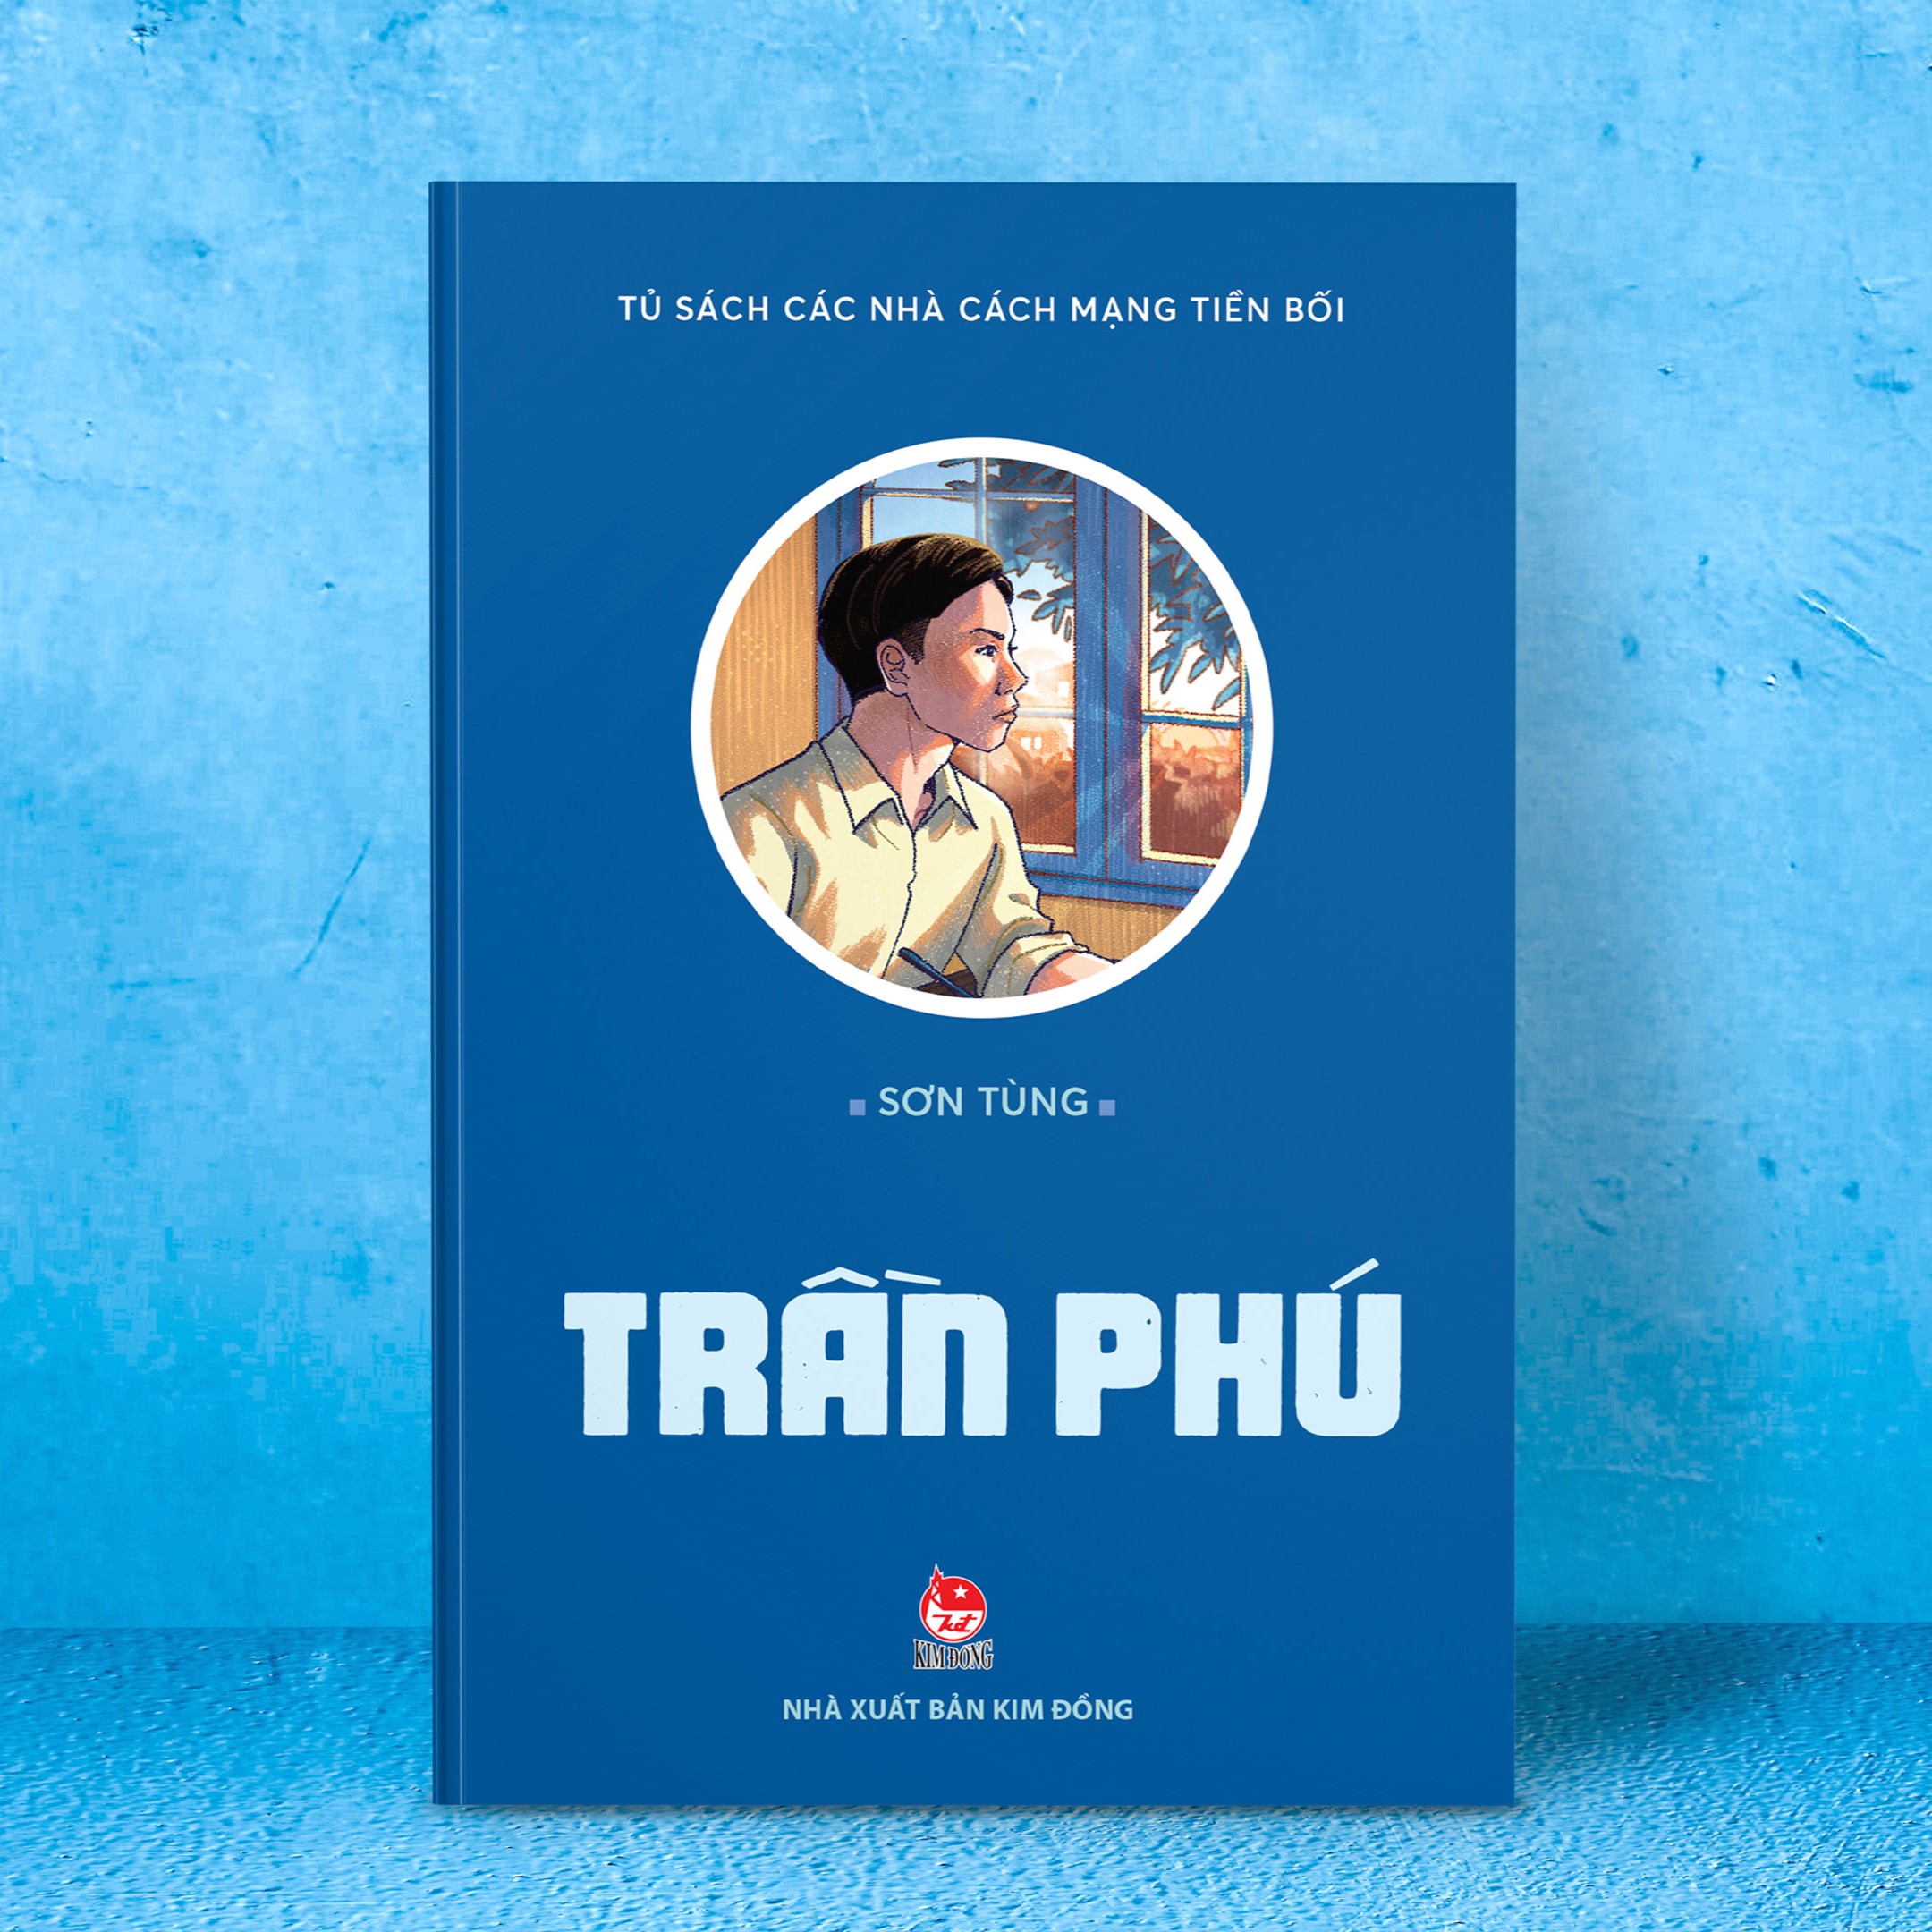 Ra mắt truyện kí về Tổng Bí thư Trần Phú của nhà văn Sơn Tùng - 1